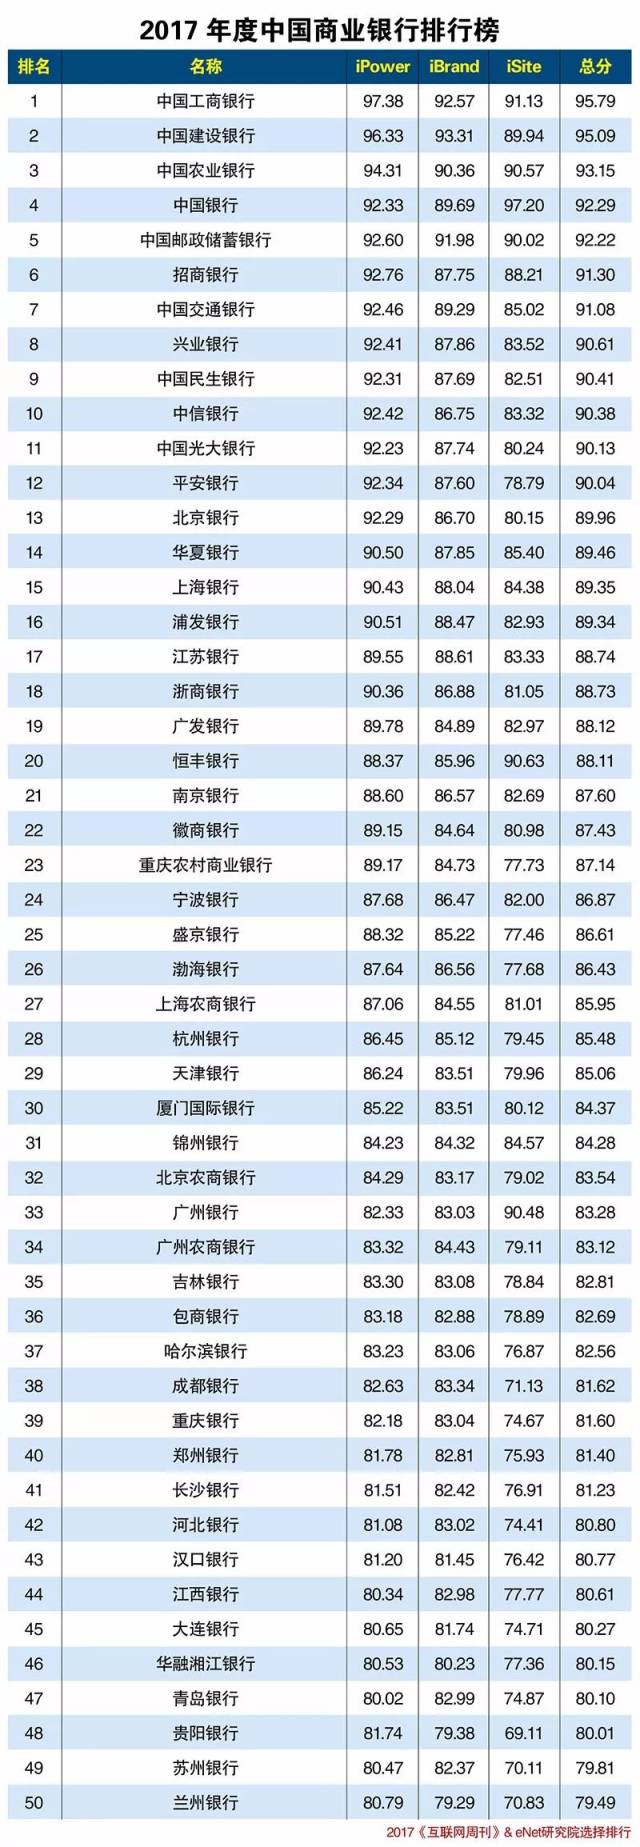 2017年度中国商业银行排行榜